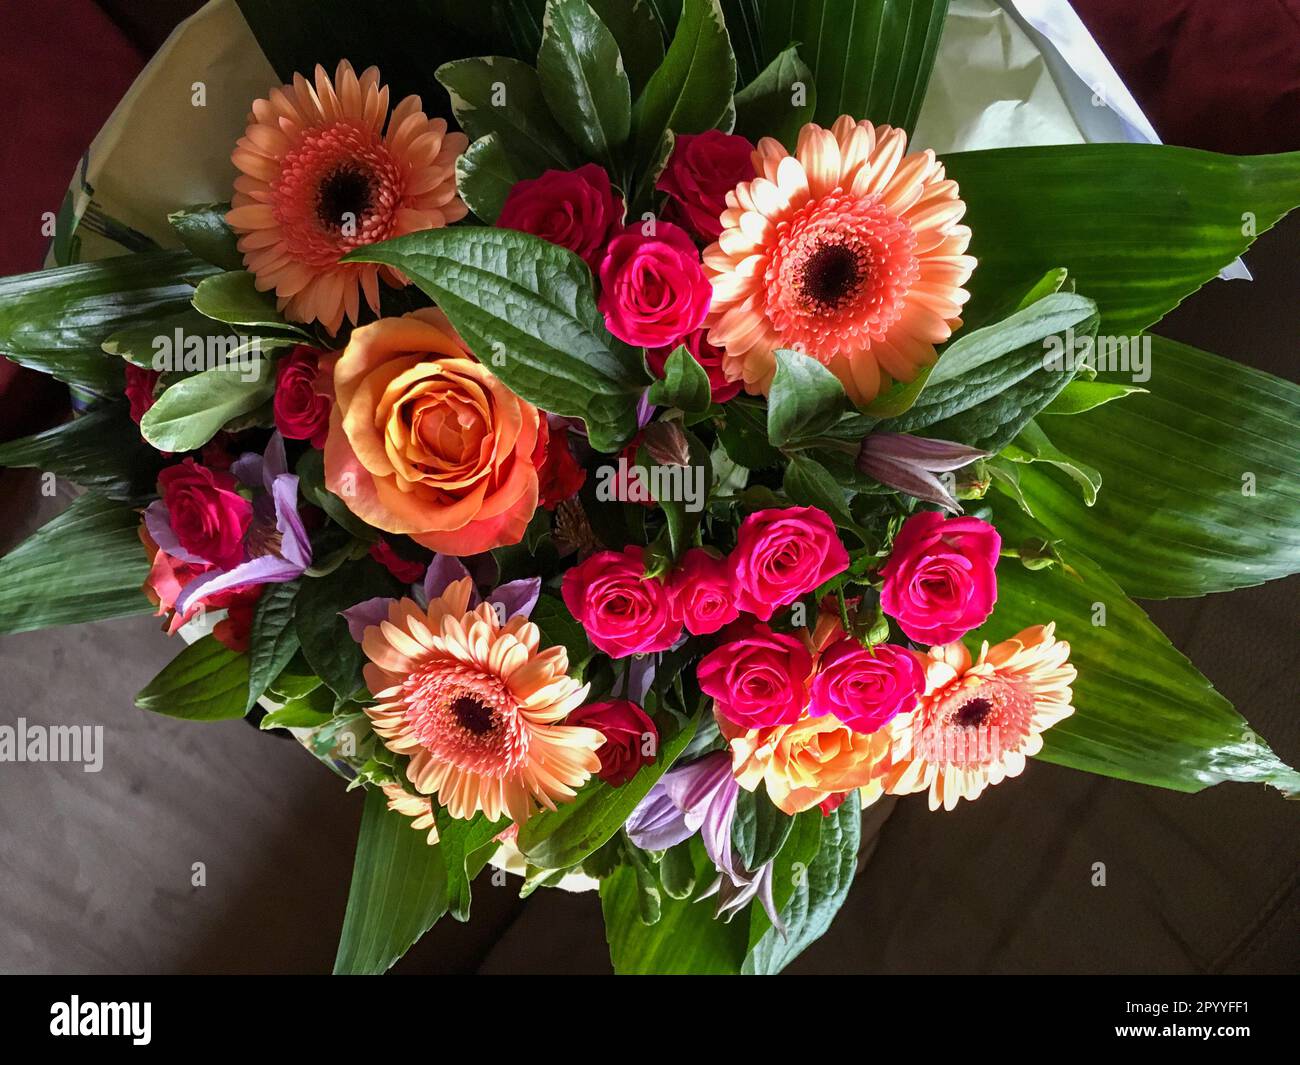 Bunter Blumenstrauß mit Gerbera, Rosen und grünen Blättern Stock Photo